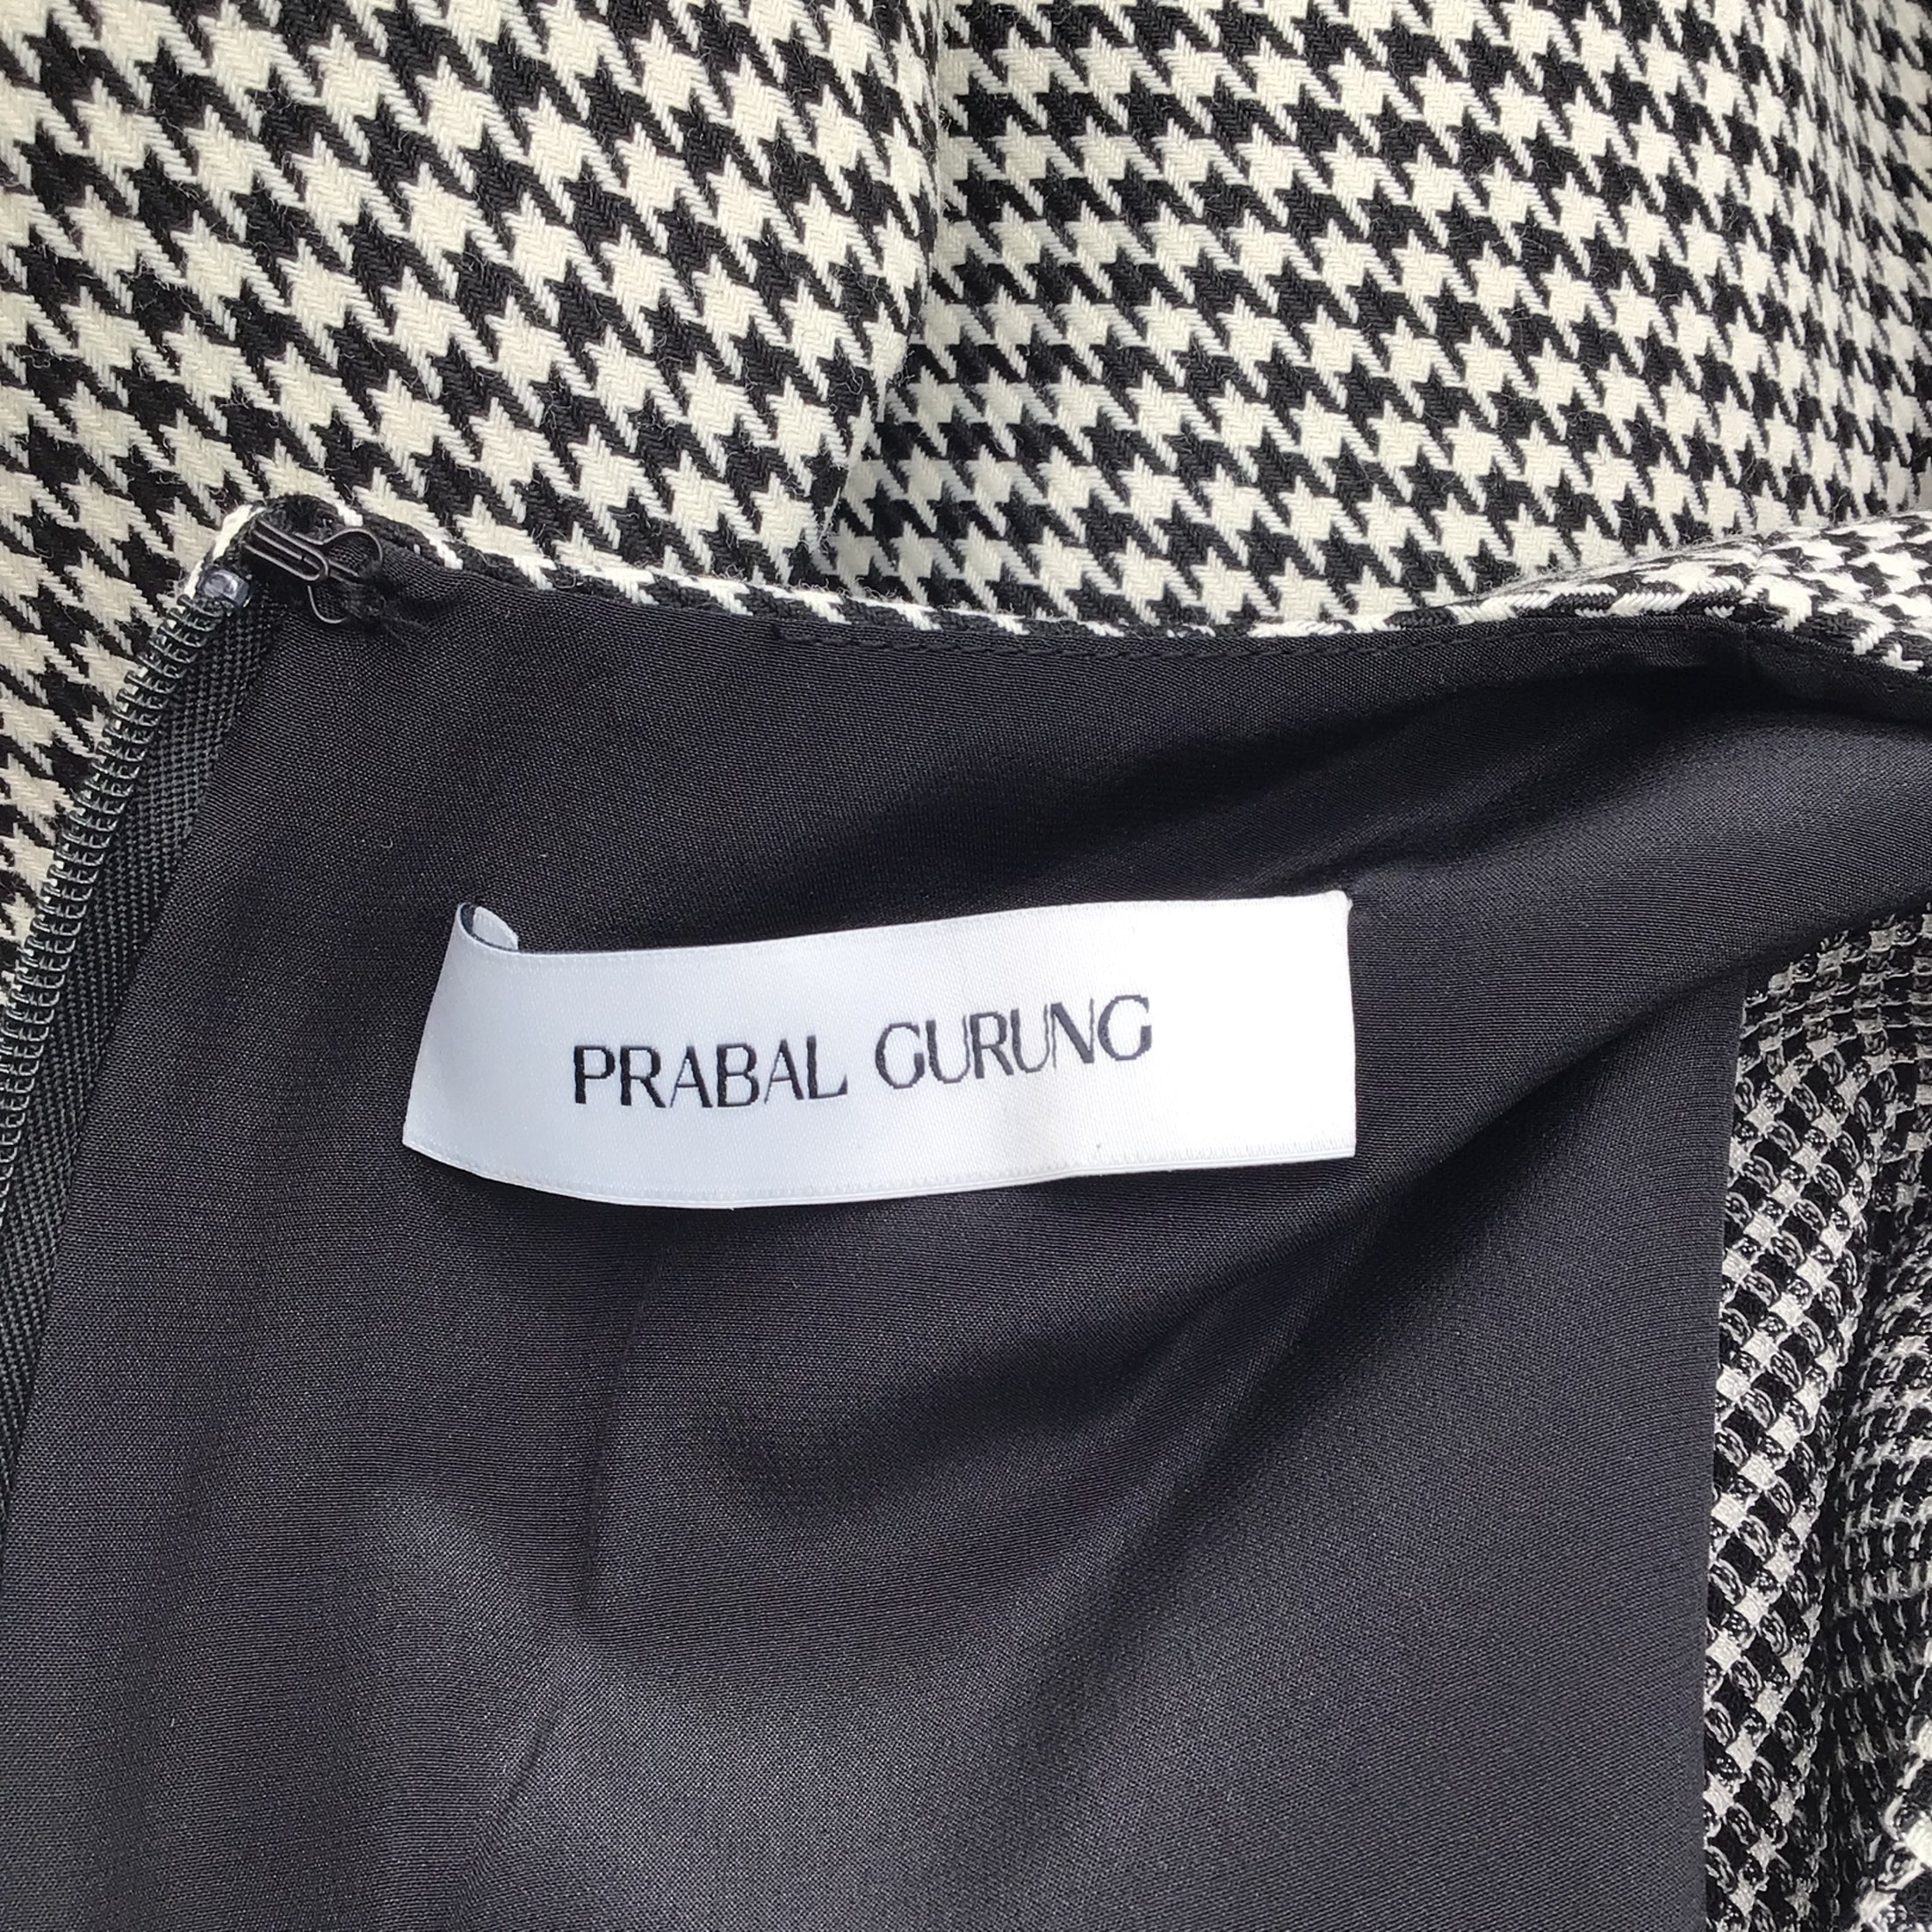 Prabal Gurung Black / White Short Sleeved Houndstooth Print Dress